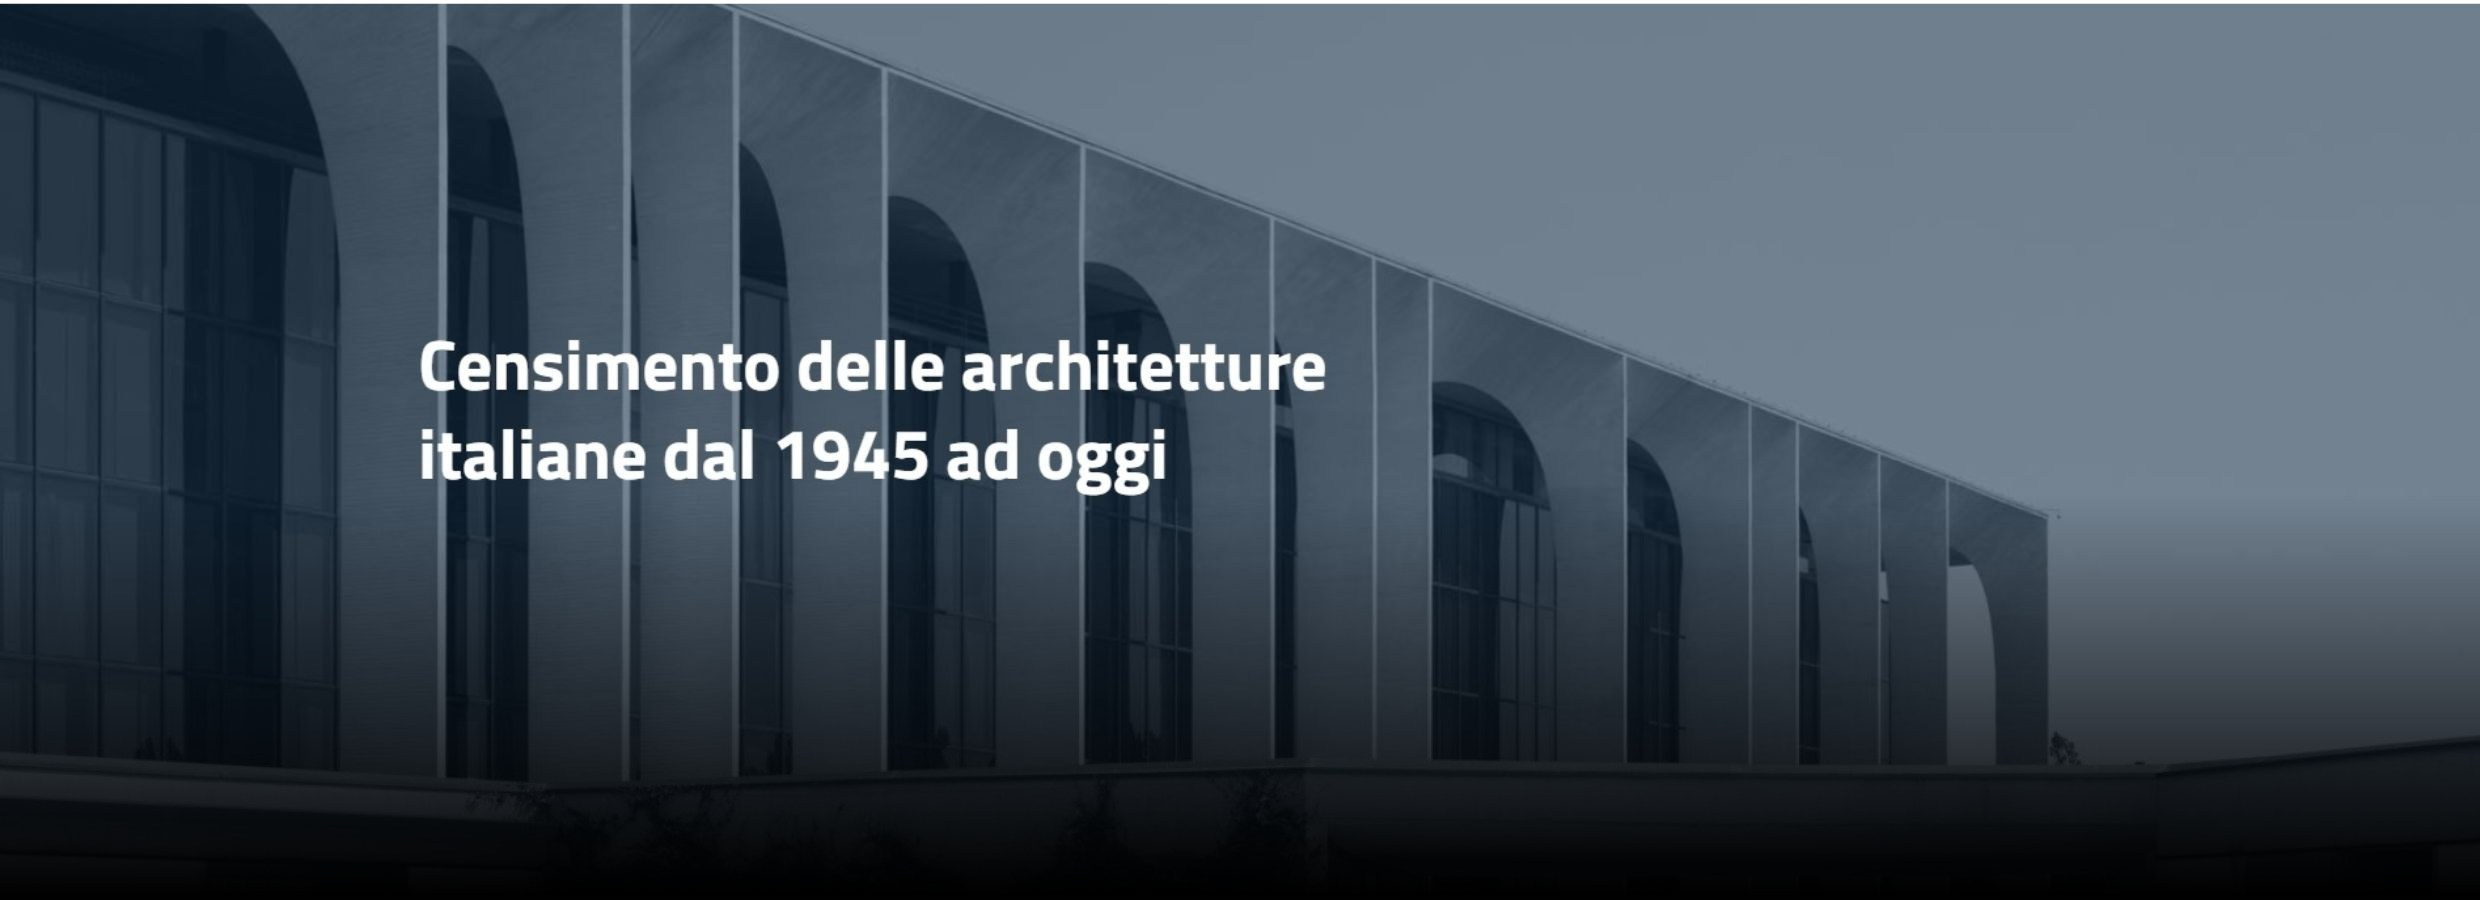 Immagine grafica per la piattaforma del Censimento delle architetture italiane dal 1945 ad oggi